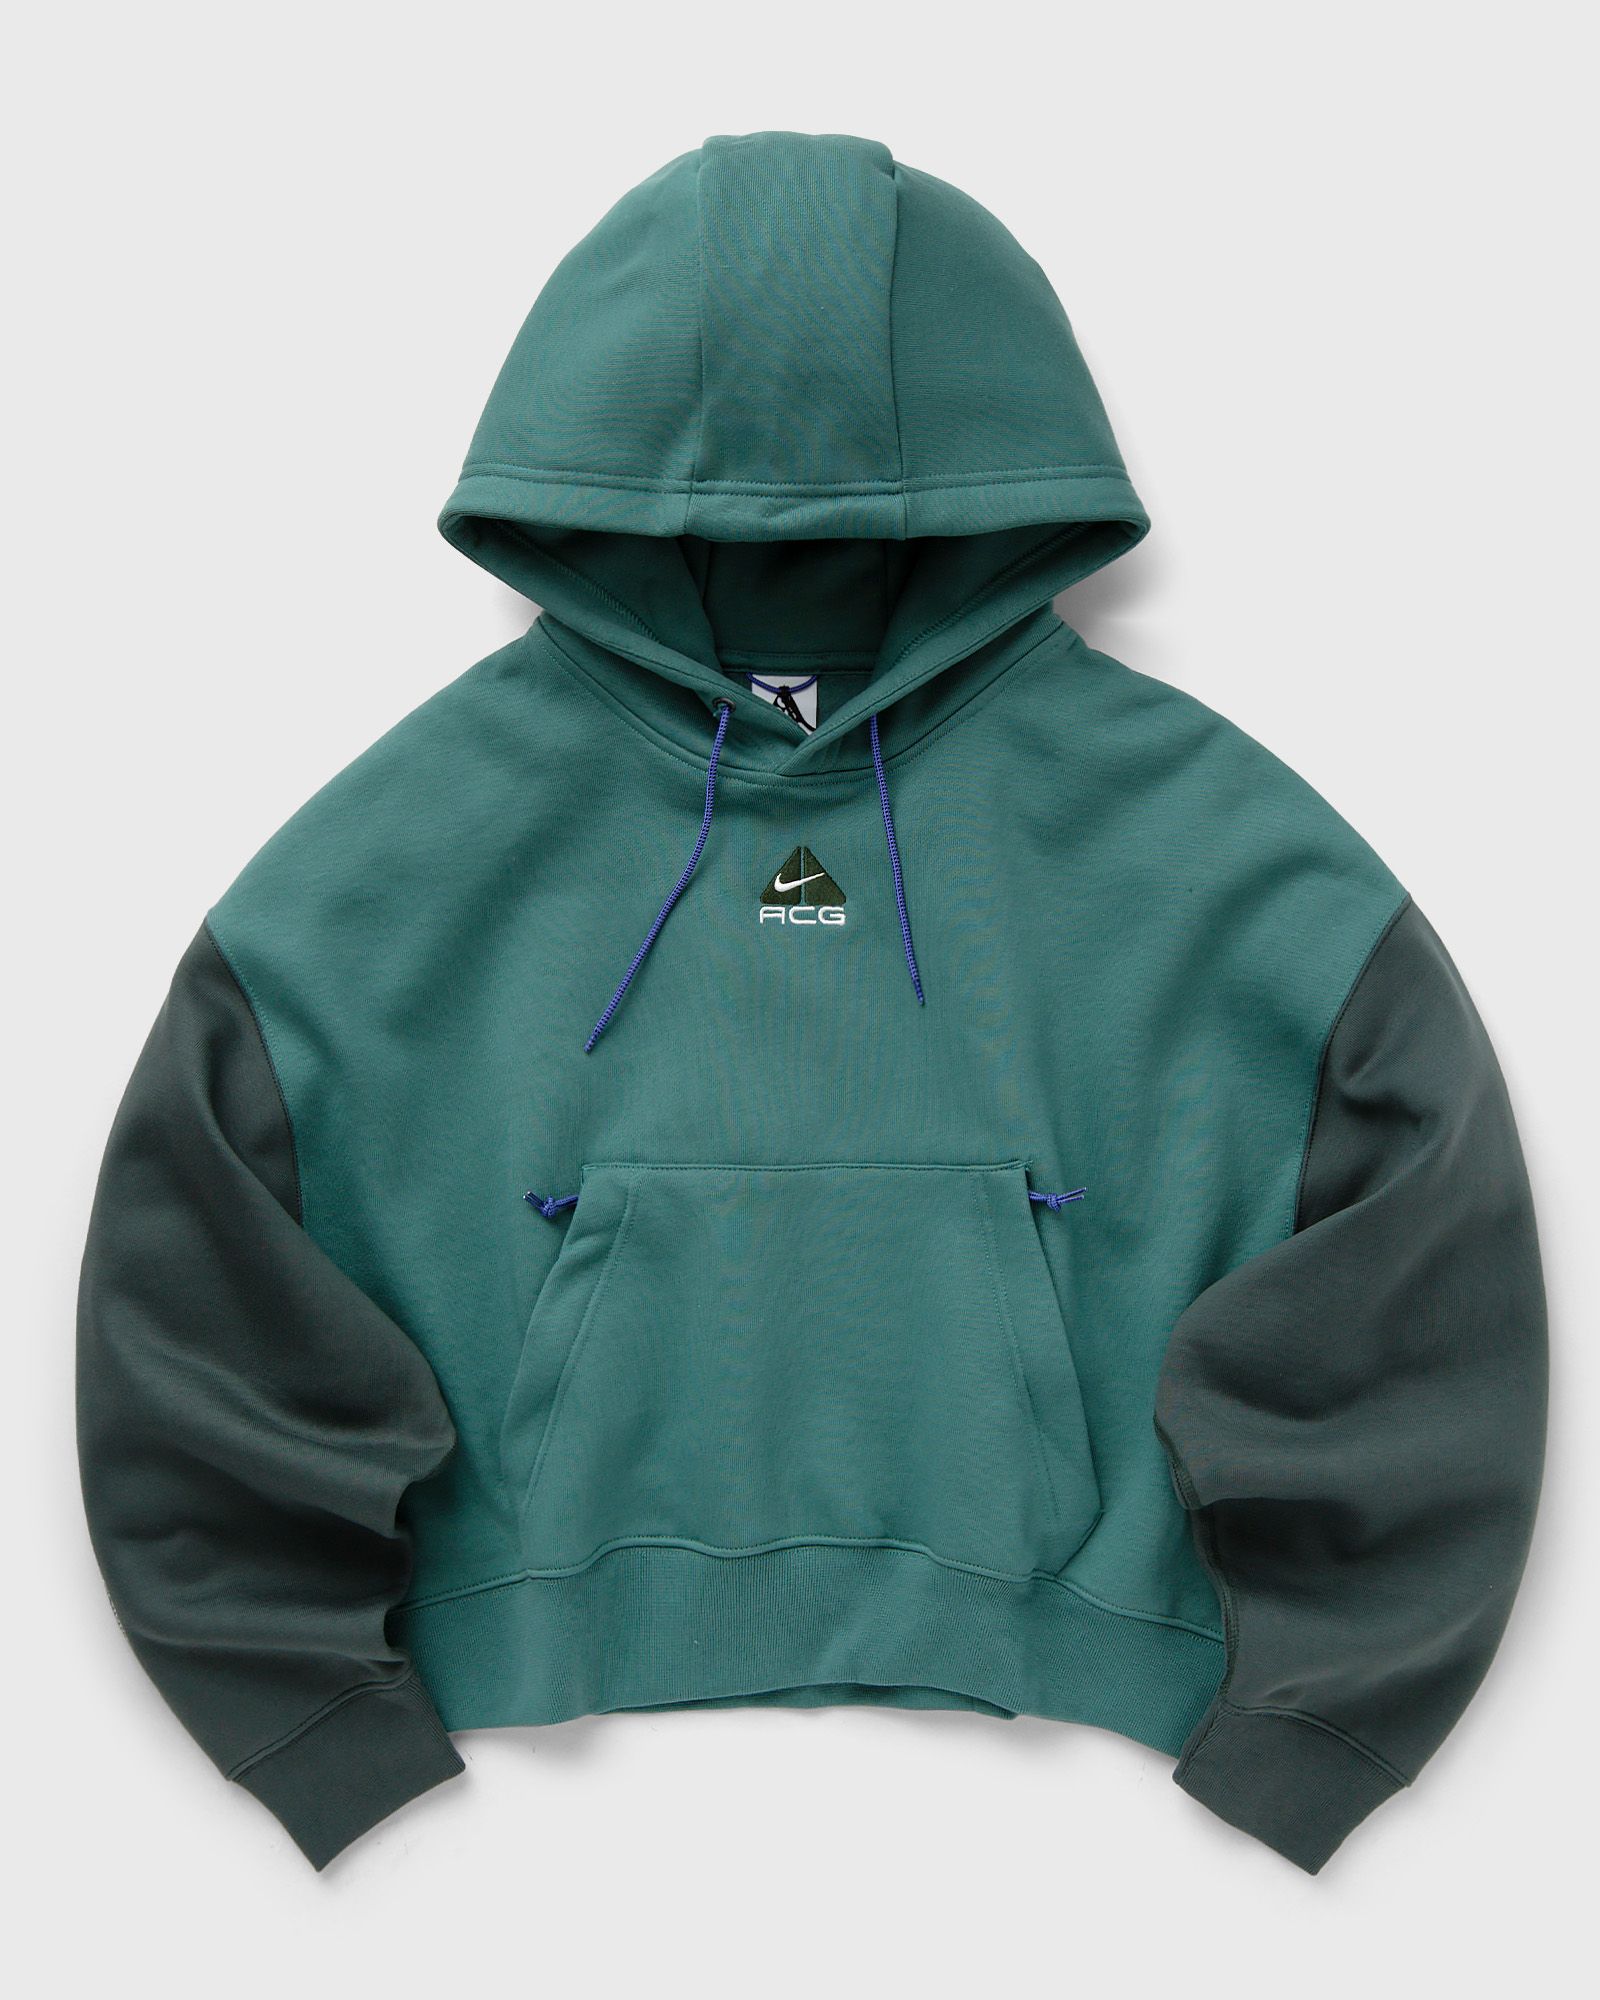 Nike - wmns acg therma-fit tuff knit fleece hoodie women hoodies green in größe:l